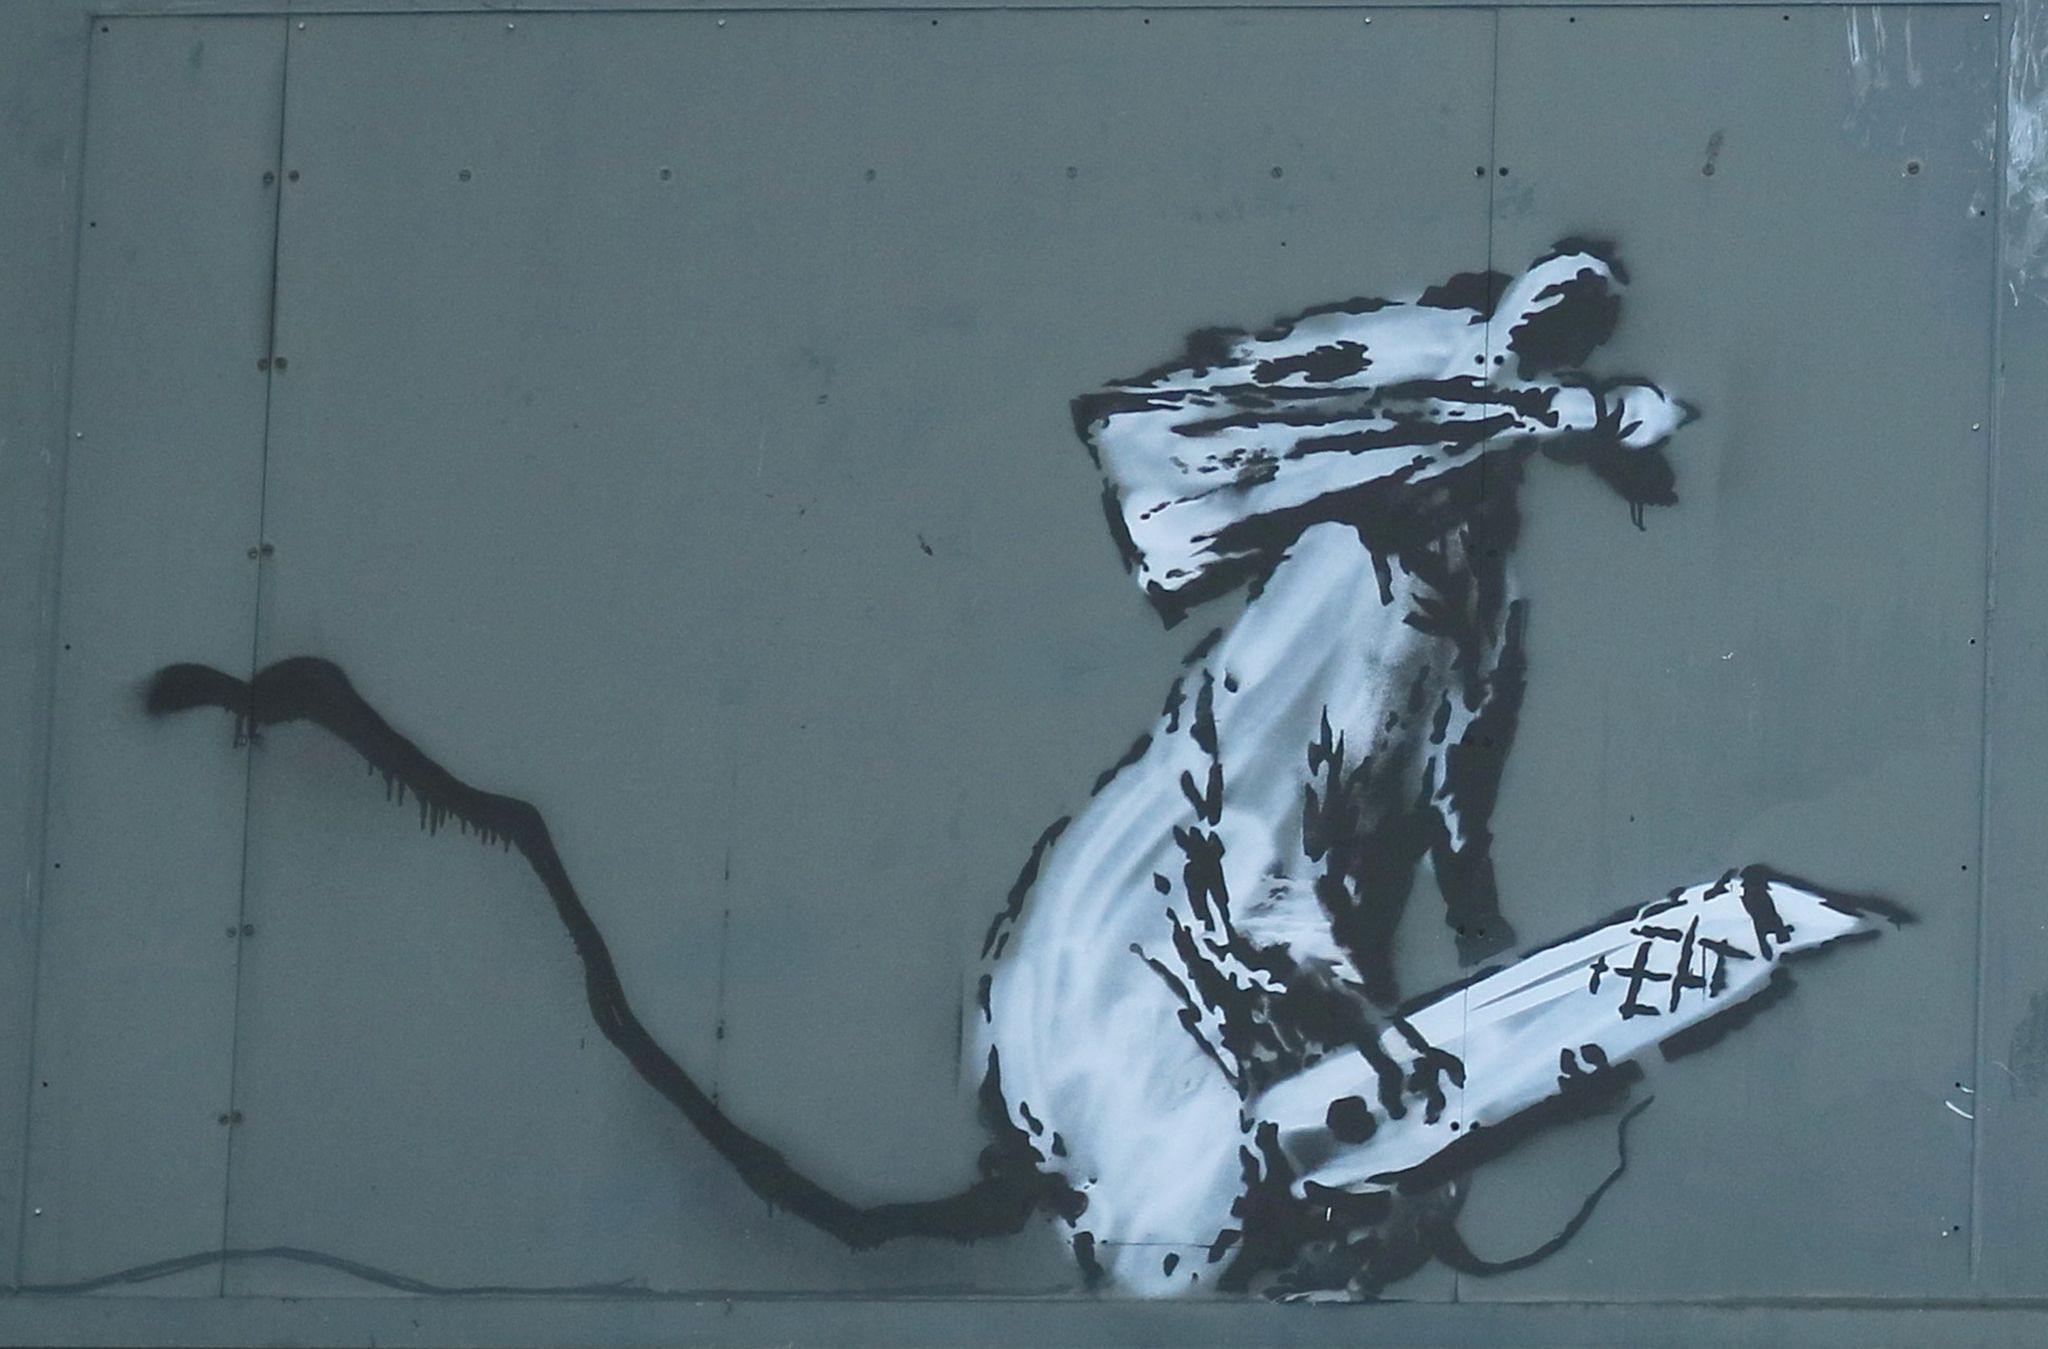 La toile de Banksy qui s'était autodétruite sera mise aux enchères en  octobre